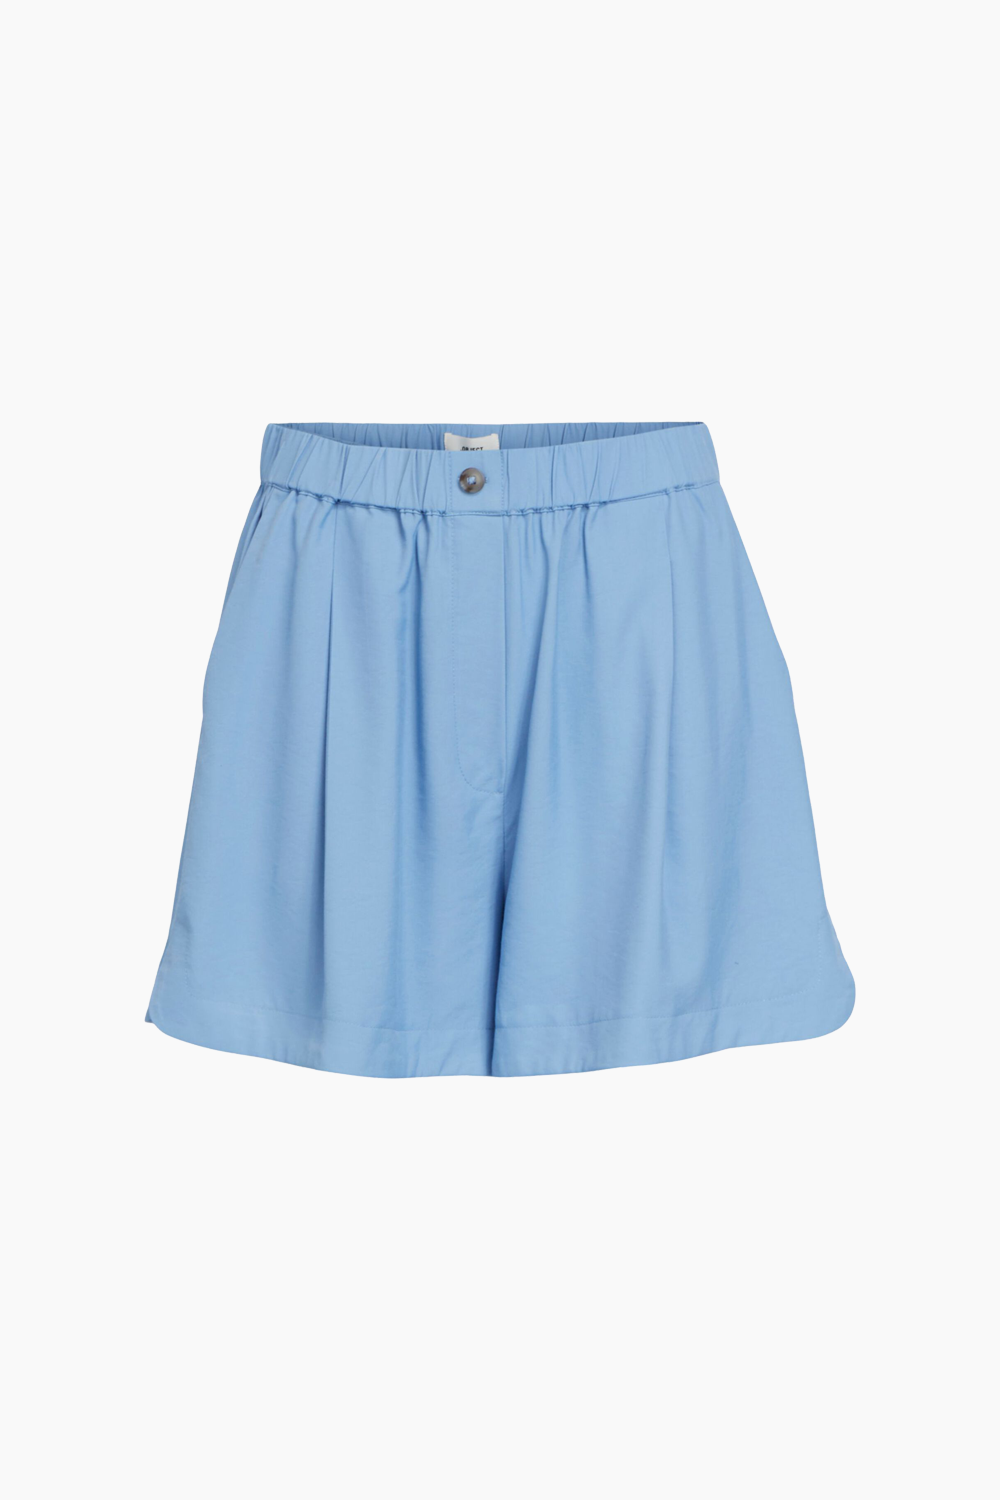 5: Objlagan HW Shorts - Provence - Object - Blå XL